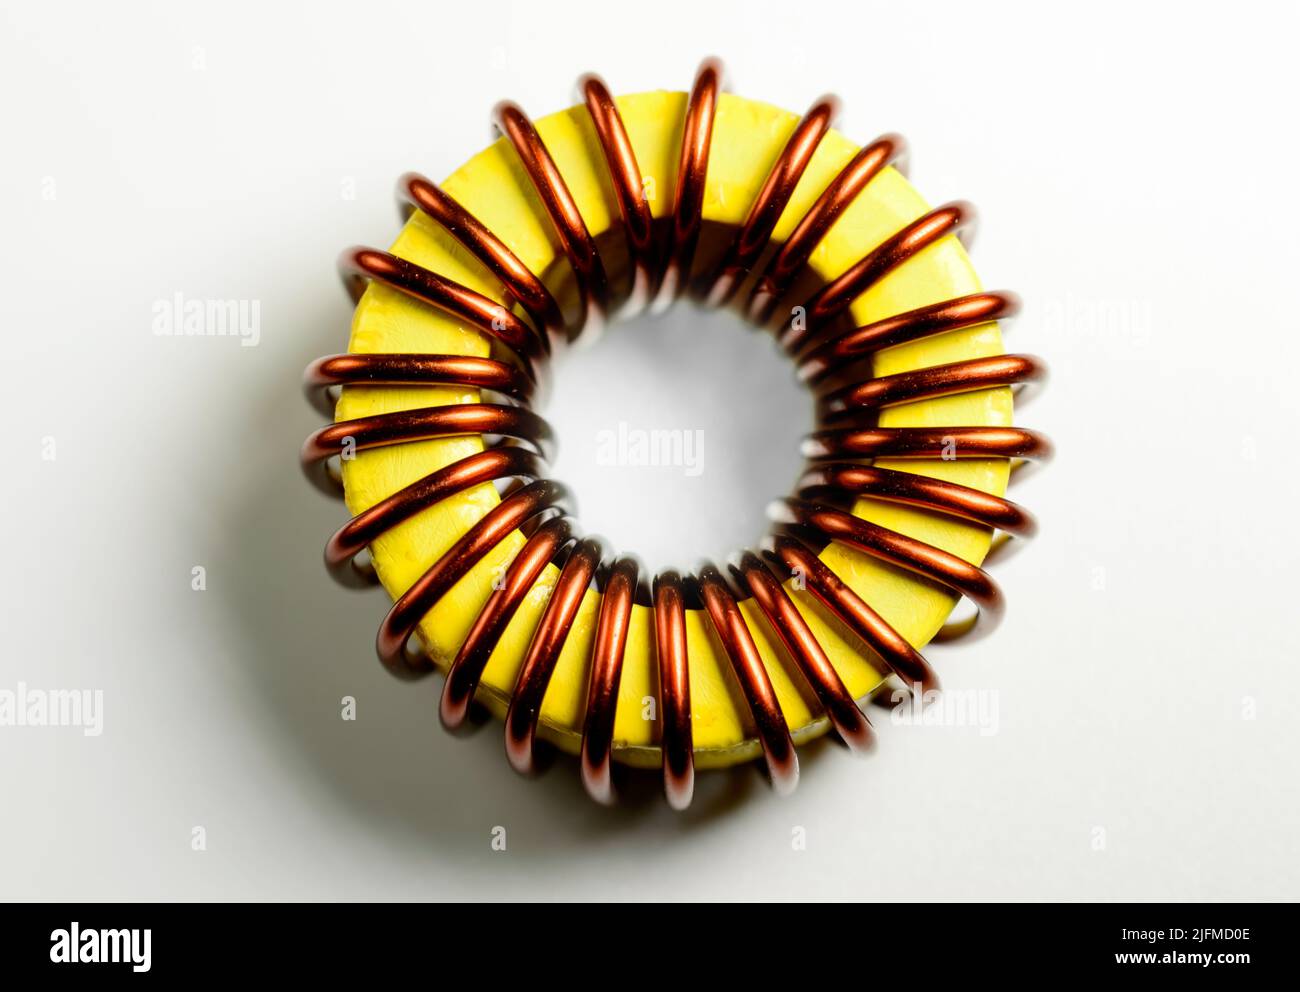 Componente induttivo, bobina filo di rame, toroide giallo - immagine macro. Isolato su sfondo bianco. Foto Stock